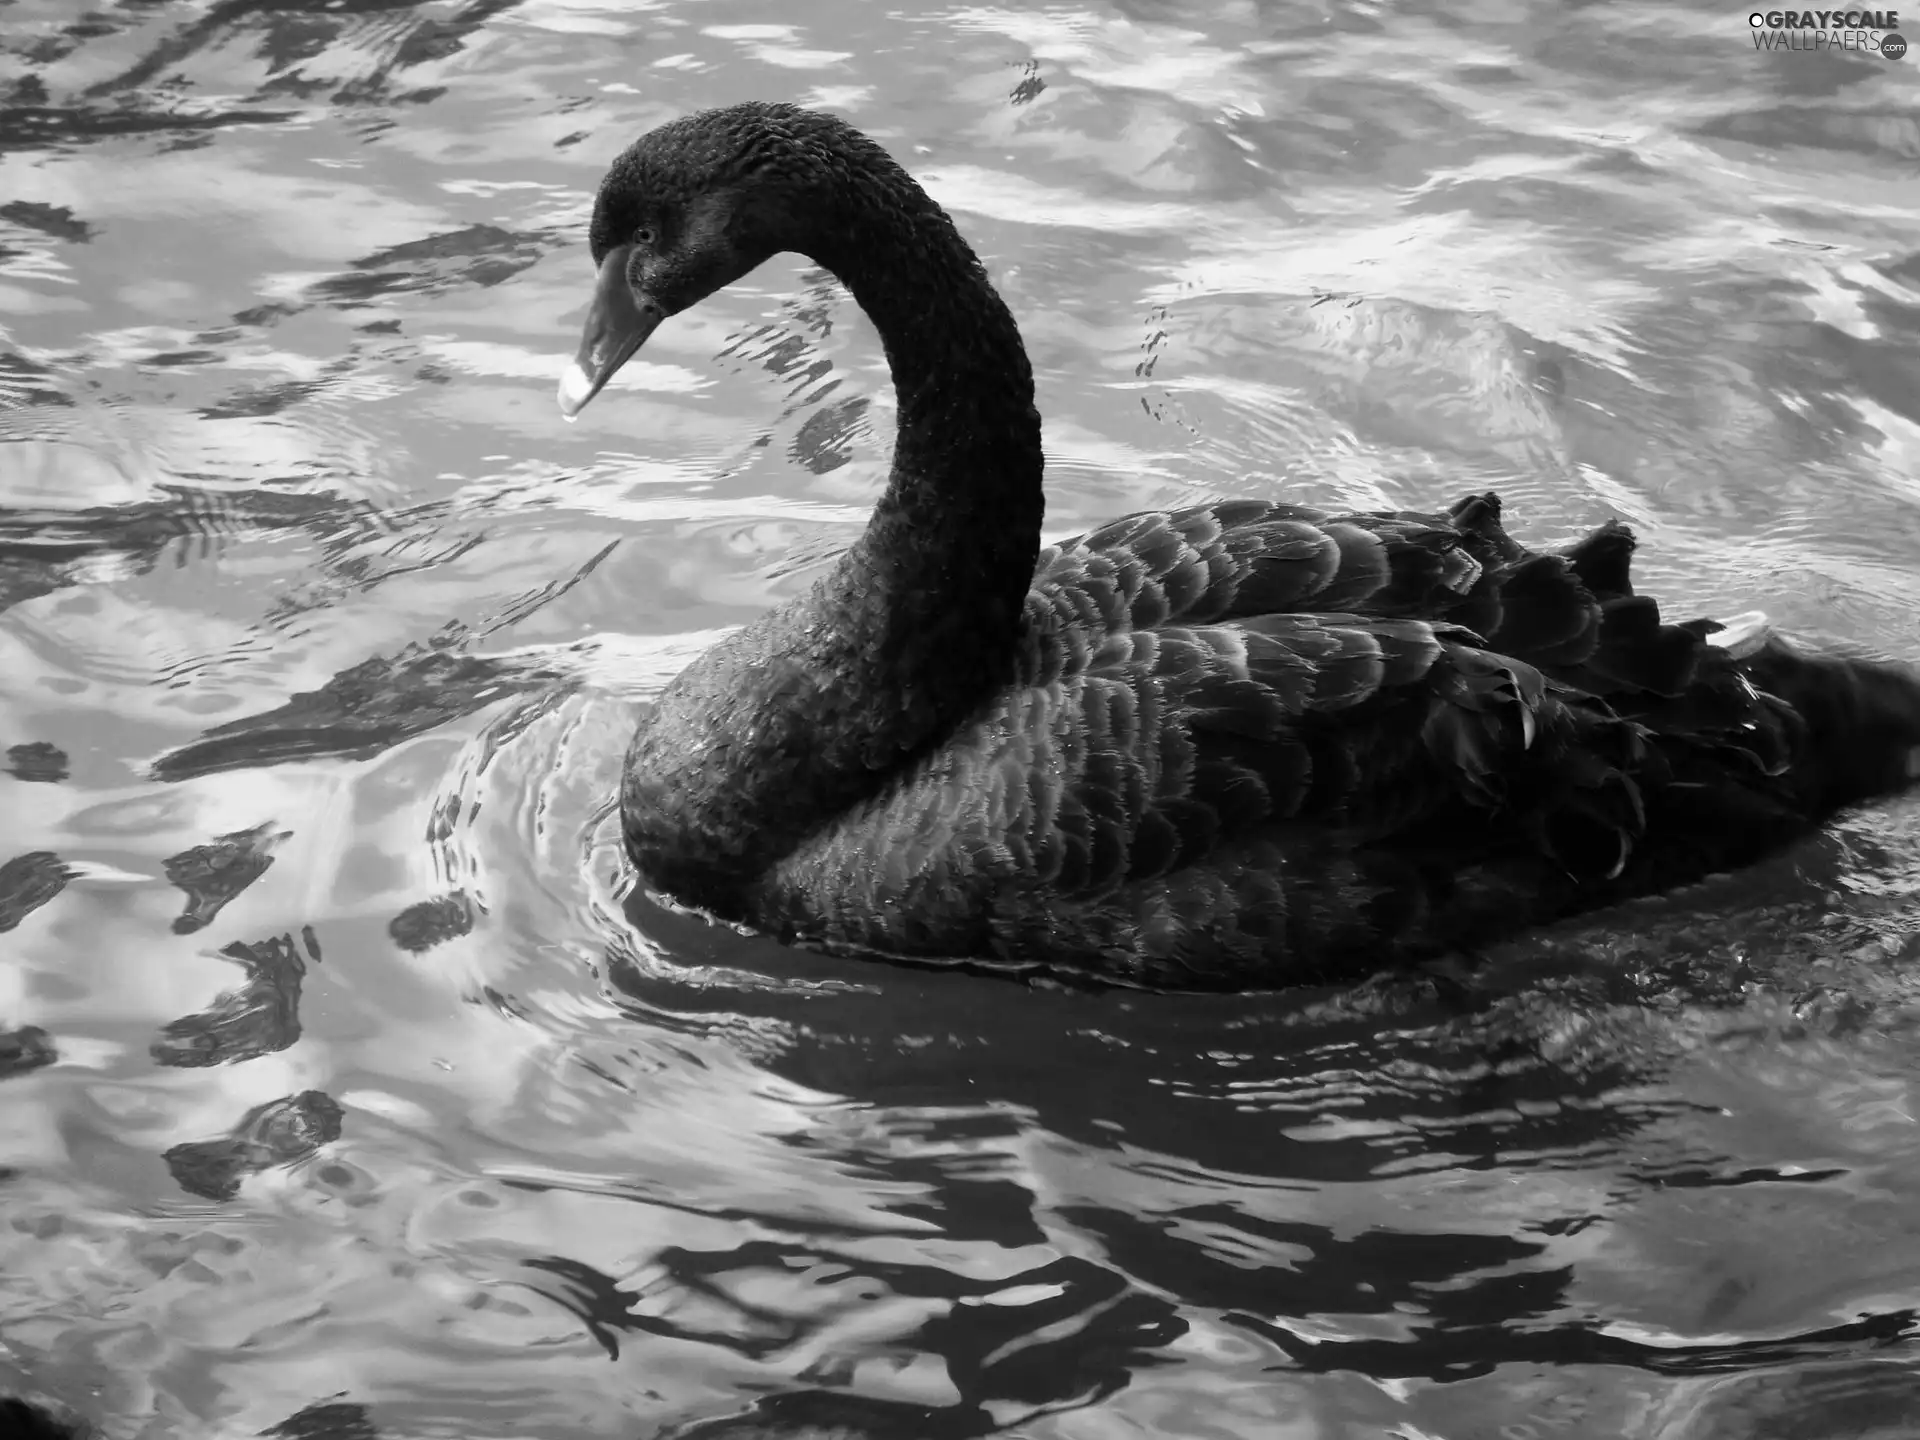 water, Black, Swans